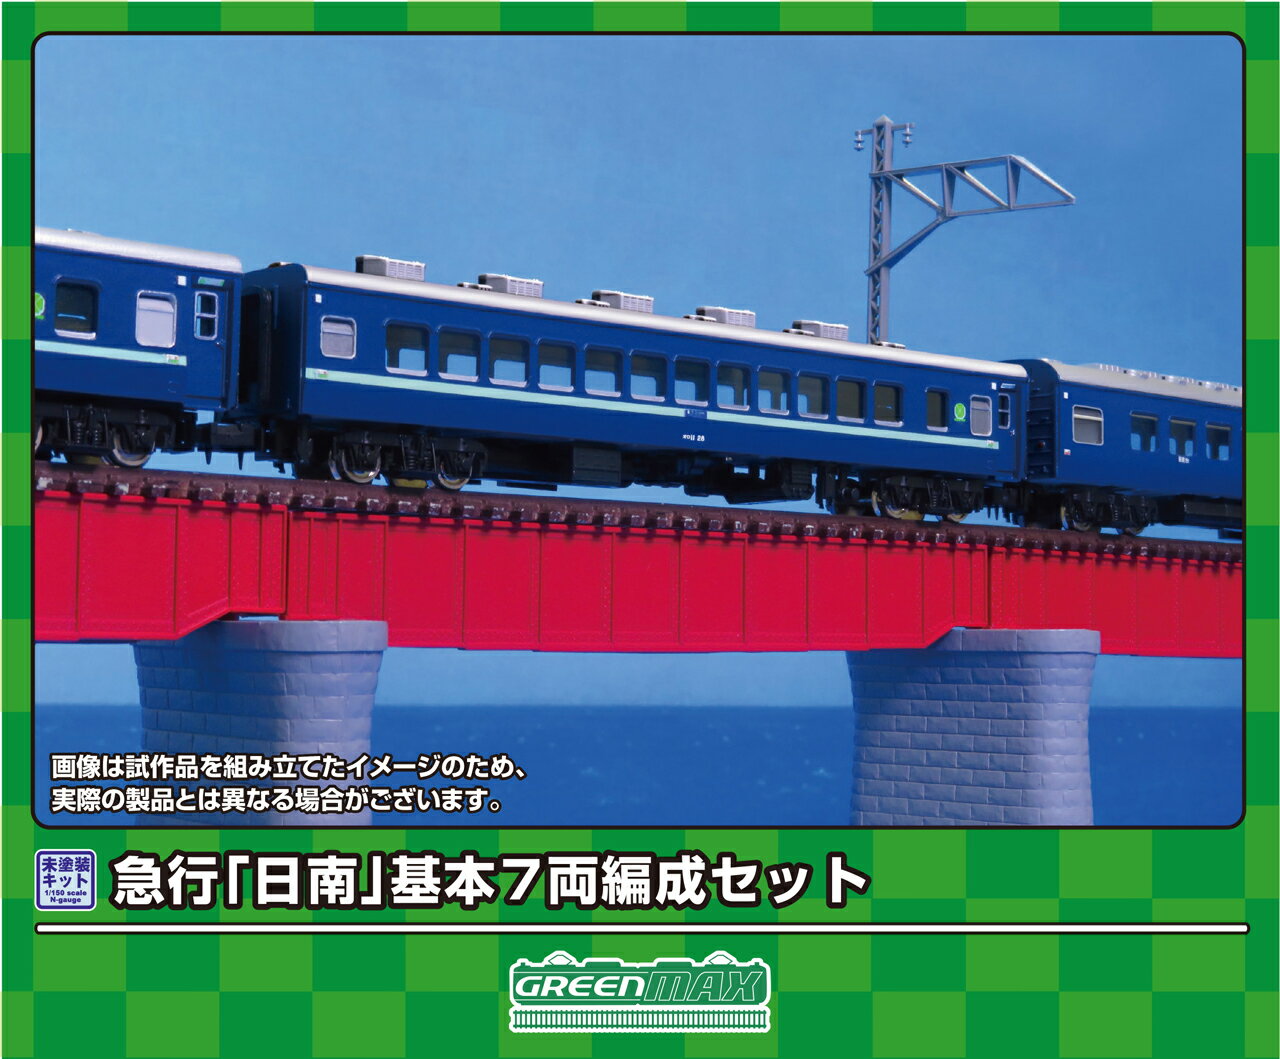 発売日：2024年9月急行「日南」は、1968（昭和43）年10月のダイヤ改正で京阪神地区&#8212;宮崎・都城間を結ぶ急行として登場した列車です。本州内はEF58形、関門間はEF30形、九州内はED76形・DF50形がそれぞれ牽引機として活躍しました。1973（昭和48）年10月の改正では、下り日南3号の宮崎&#8212;都城間の牽引機がC57形に変更され、国鉄最後の蒸気機関車牽引の急行列車として注目されましたが、1974（昭和49）年3月に終了しました。1975（昭和50）年3月のダイヤ改正で急行「日南」としての運用は終えましたが、同区間の列車は寝台特急「彗星」として平成の時代まで運行されました。商品セット構成 ・ボディ（グレー成形）・屋根（グレー成形）・ベンチレーター・クーラー（AU13角）・床下機器（黒成形）・幌・塩ビ板・ウエイト・ステッカー・組立説明書■急行「日南」をイメージしたアソートセット■行先表示板、愛称板などを収録した新規製作の専用ステッカーが付属■ボディ・屋根グレー成形、床下機器は黒成形■急行「日南」用の行先表示、愛称札、号車札などを収録したステッカー（新規製作）が基本セットと増結セットに付属■別売りの＜624＞増結6両セットと組み合わせることで、実車と同じ13両編成を再現可能※本製品に台車、車両マークは付属しません。※本製品は未塗装キットのため、組み立て、塗装が必要です。※商品の仕様は一部実車と異なる場合があります。対象年齢：15歳以上&copy;GREENMAX623　